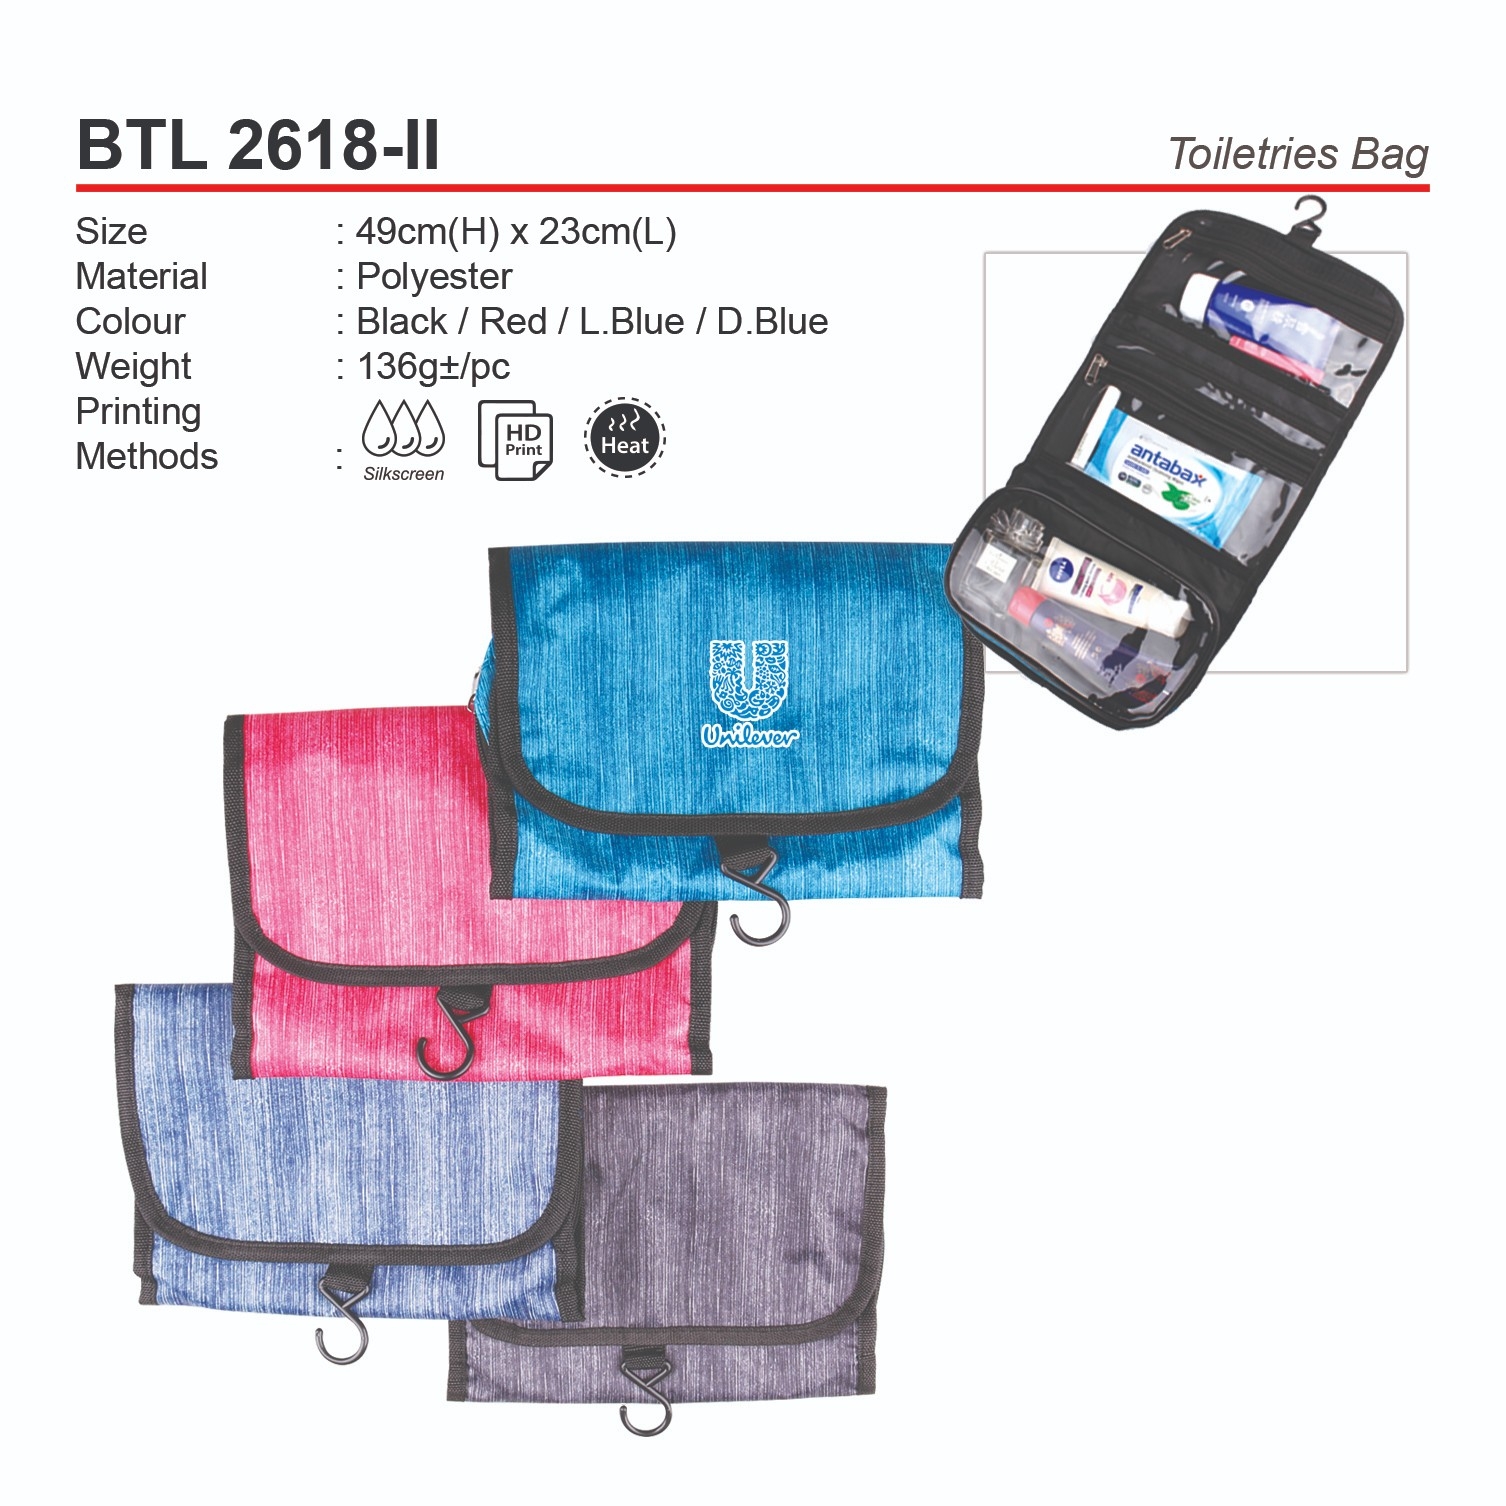 D*BTL2618-II Toiletries Bag (A)